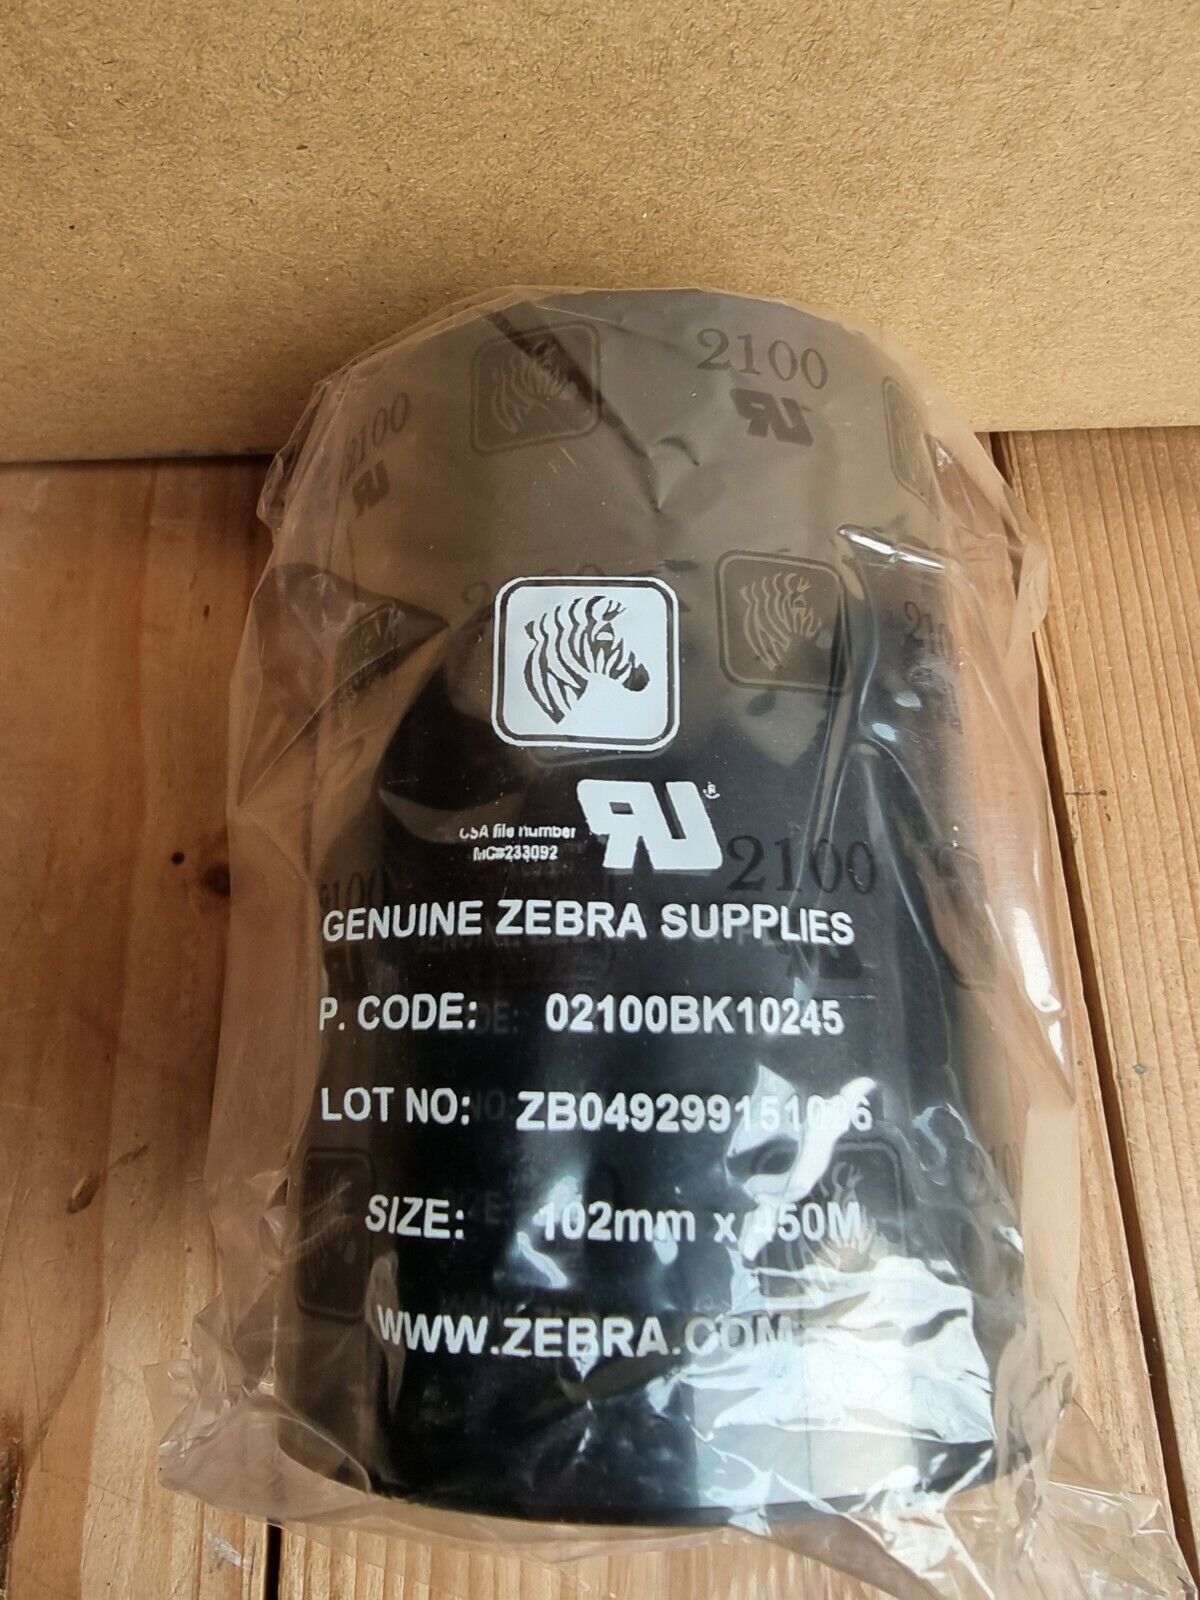 Zebra 02100BK10245 Original Wax Printer Ribbon 2100 (102mm x 450m)